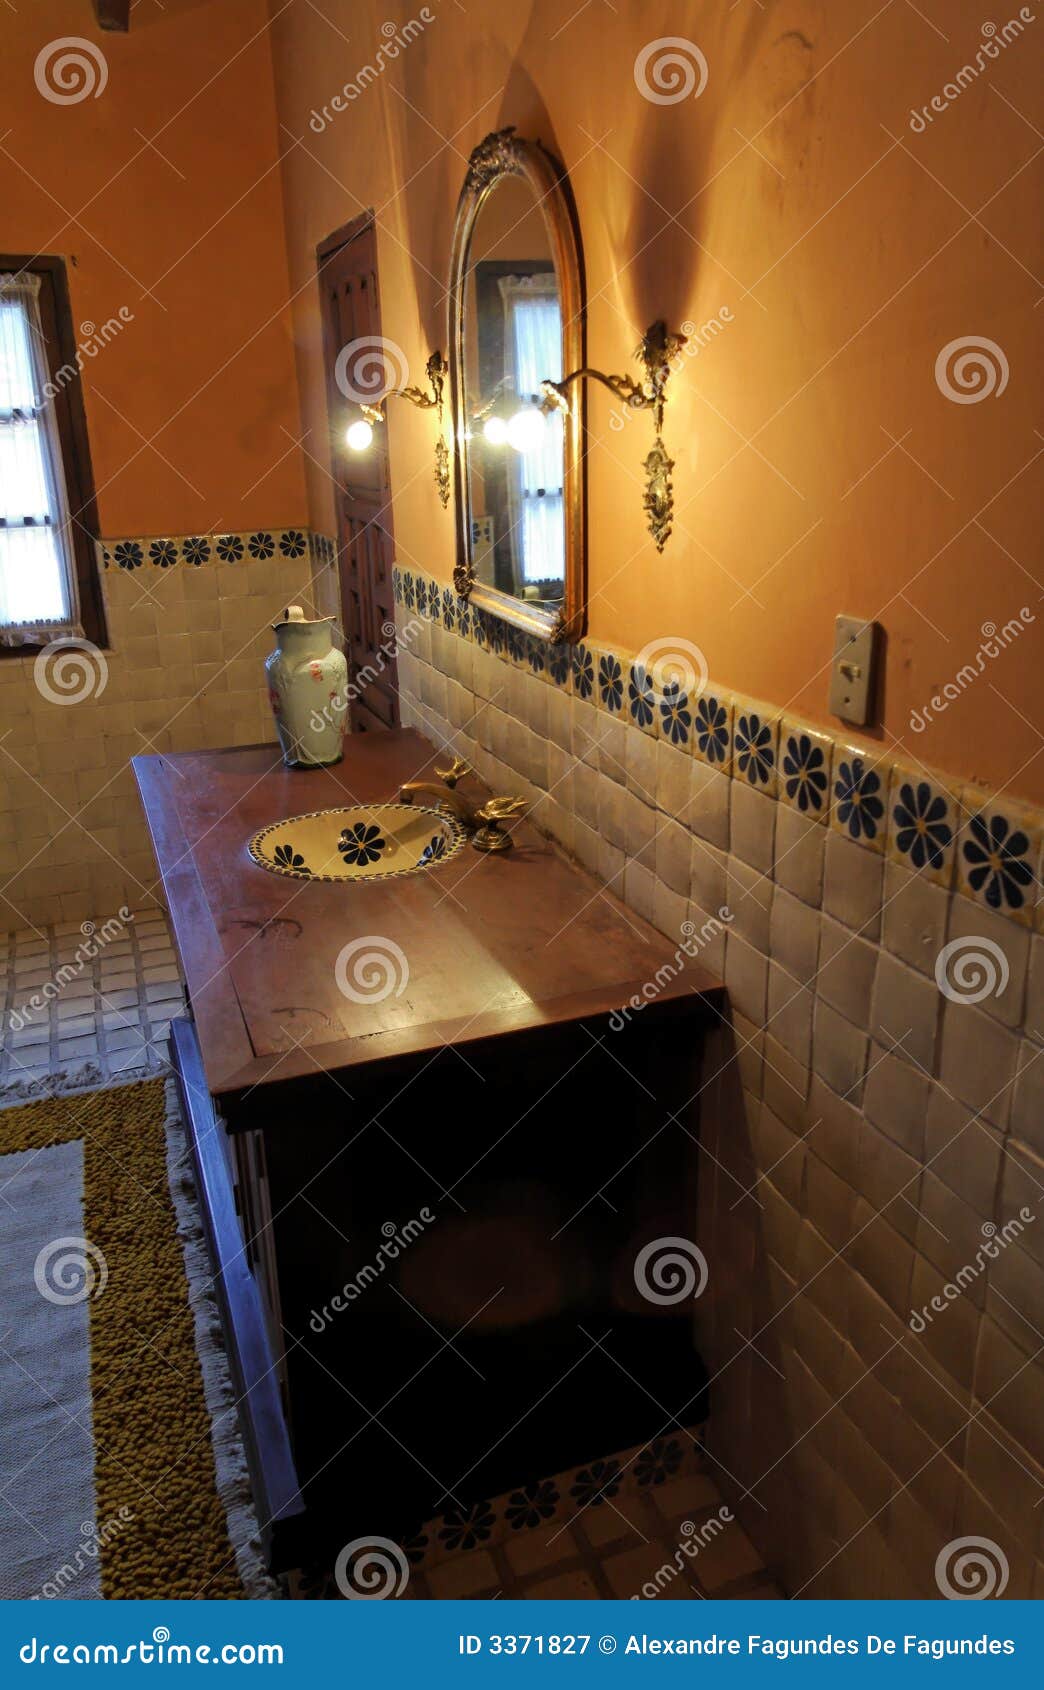 hacienda bathroom guanajuato